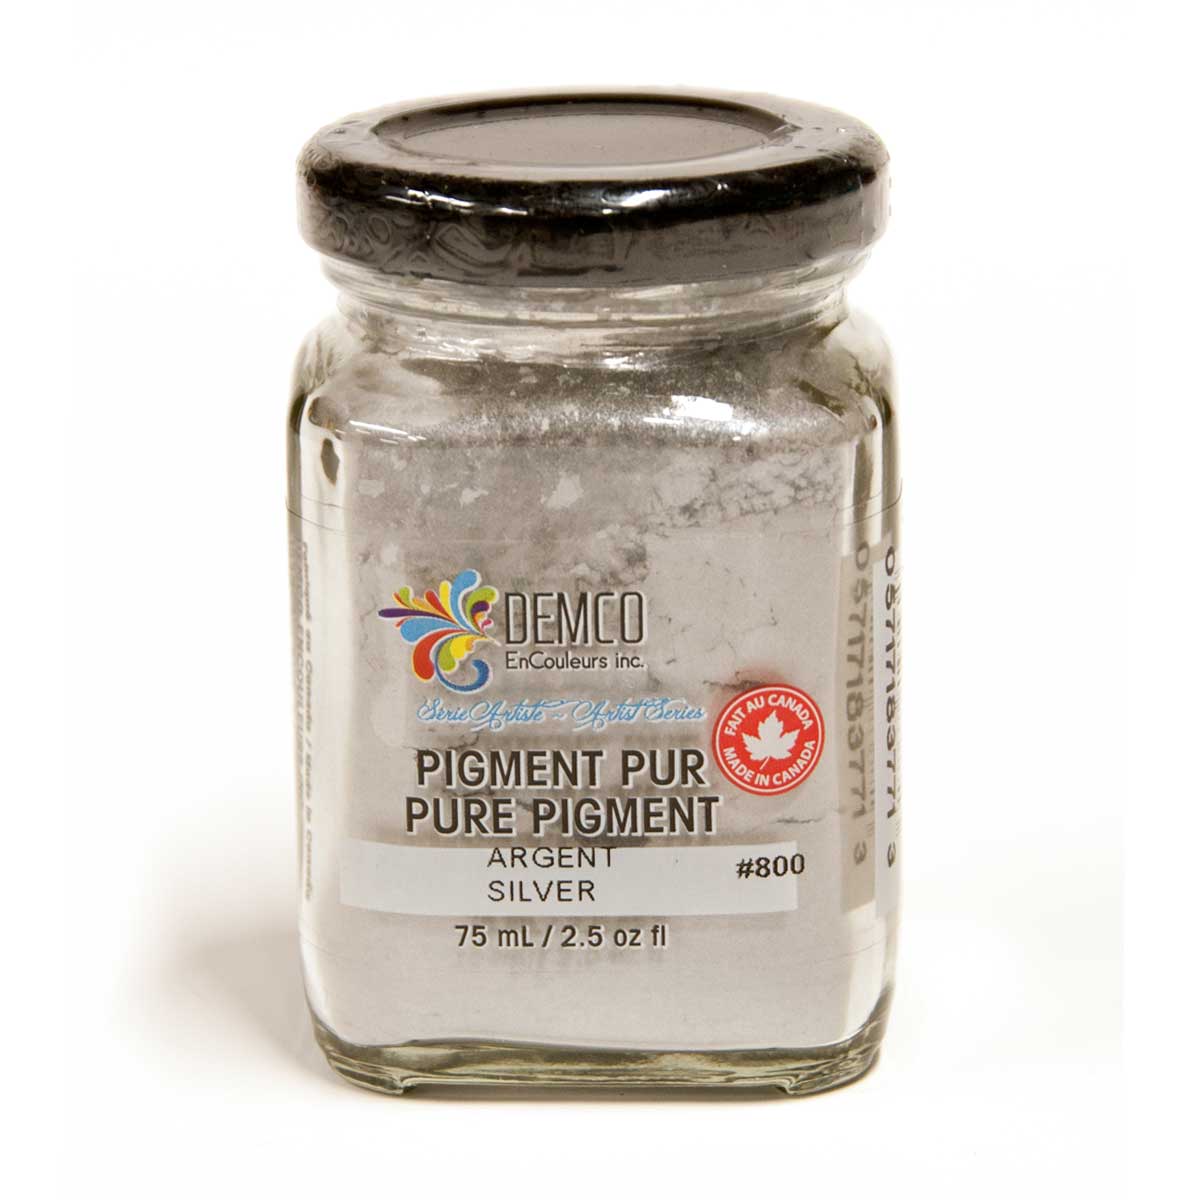 Demco Pure Pigment Artist Series 2 - Silver 75 ml